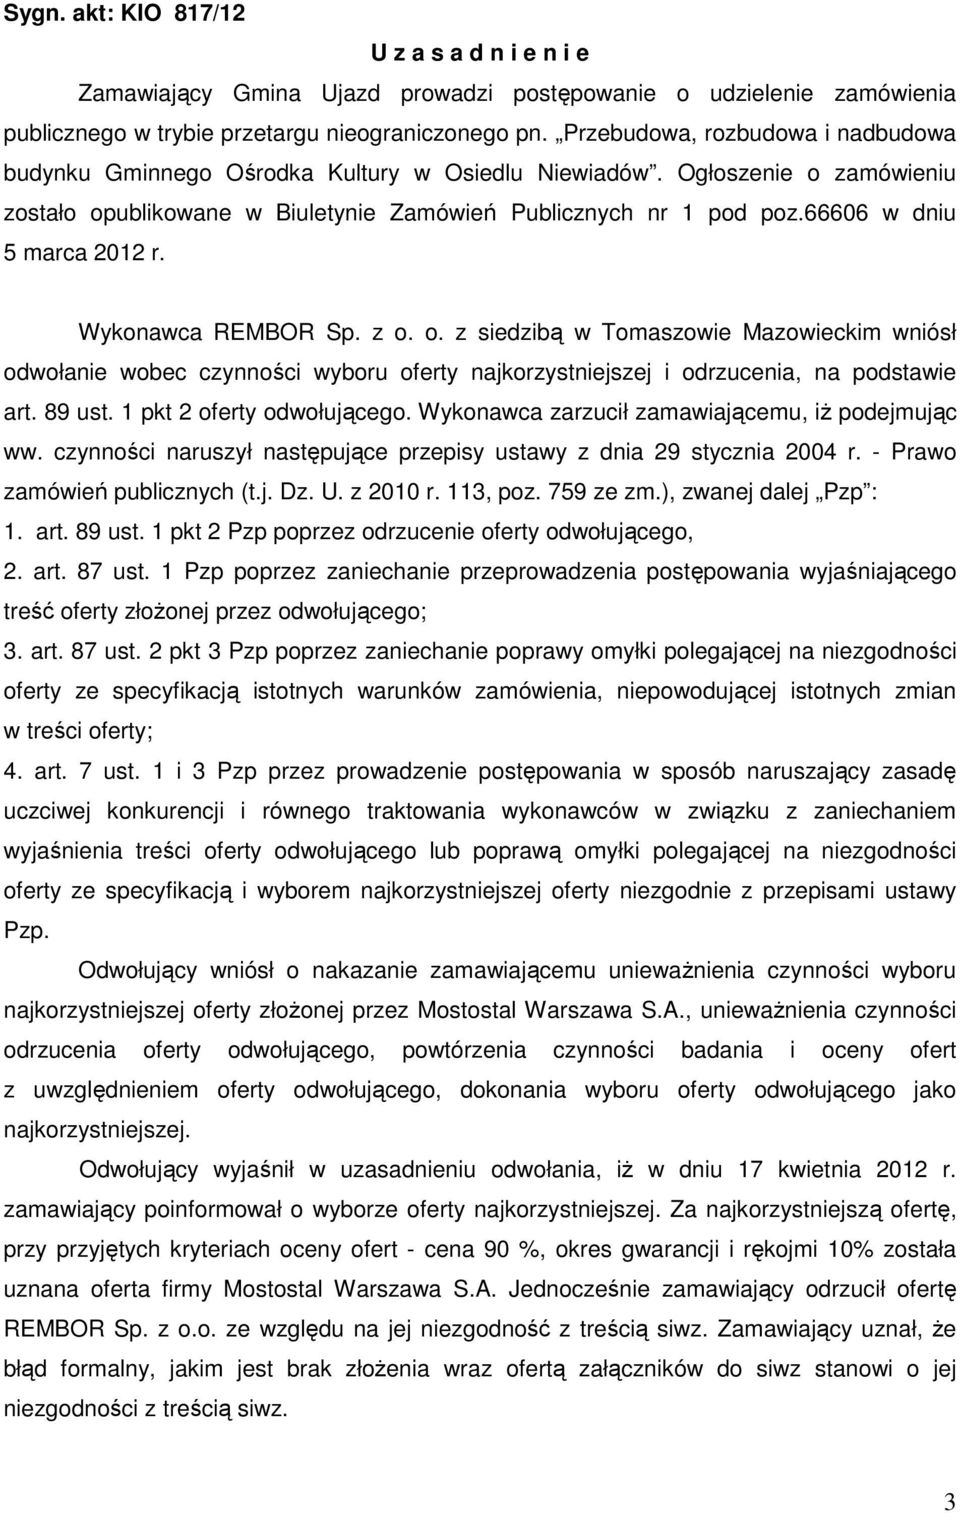 66606 w dniu 5 marca 2012 r. Wykonawca REMBOR Sp. z o. o. z siedzibą w Tomaszowie Mazowieckim wniósł odwołanie wobec czynności wyboru oferty najkorzystniejszej i odrzucenia, na podstawie art. 89 ust.